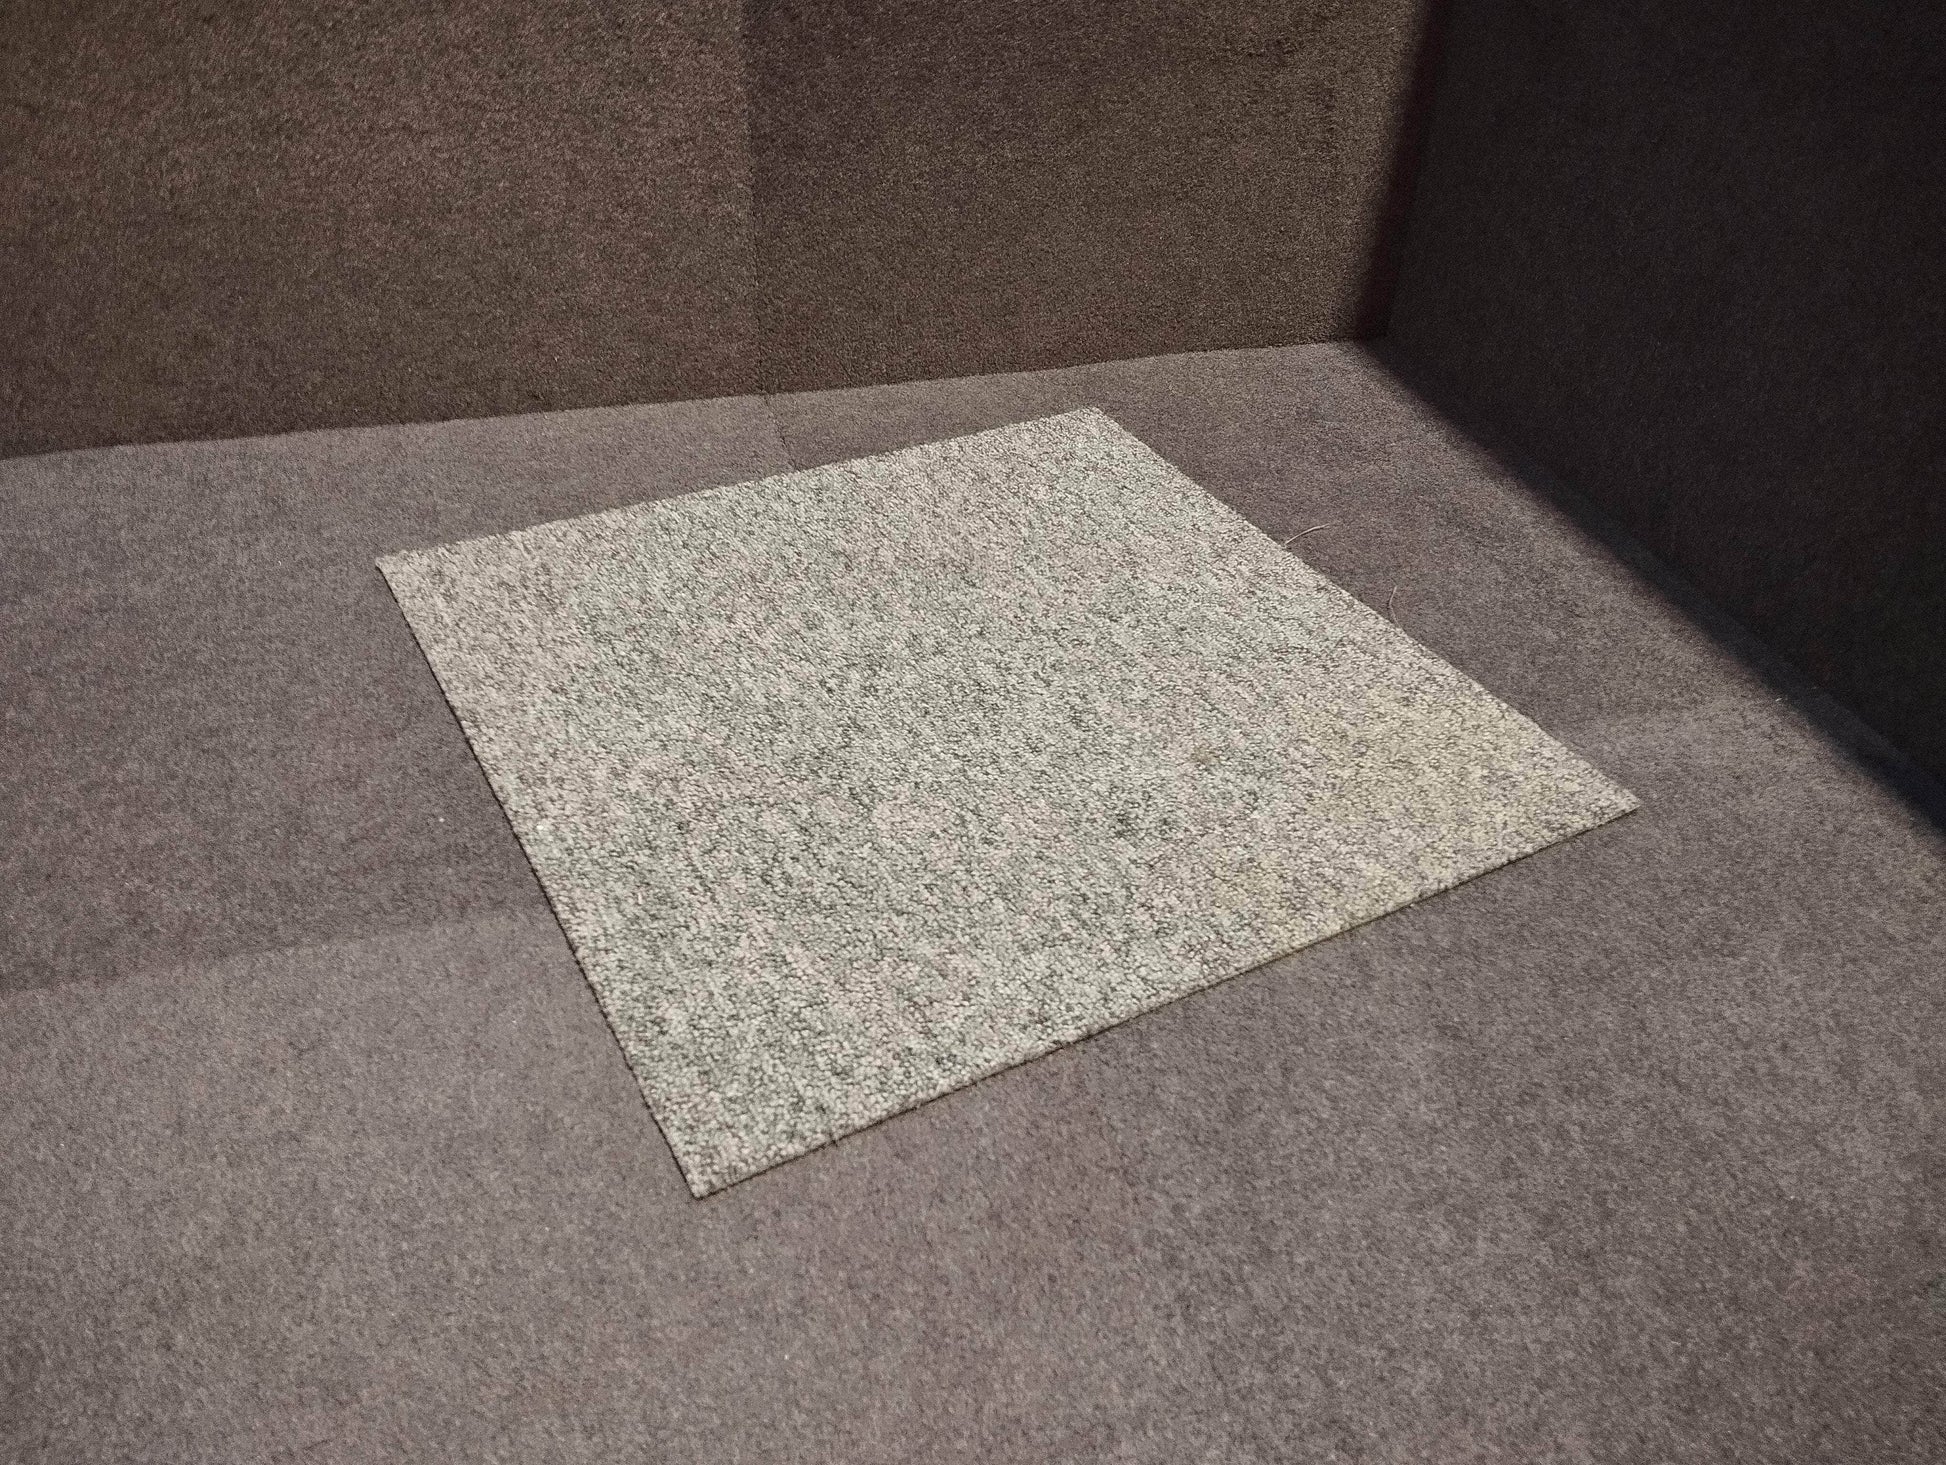 Cloison, isolation (réemploi)  -  Dalle de moquette desso grise 50x50 cm